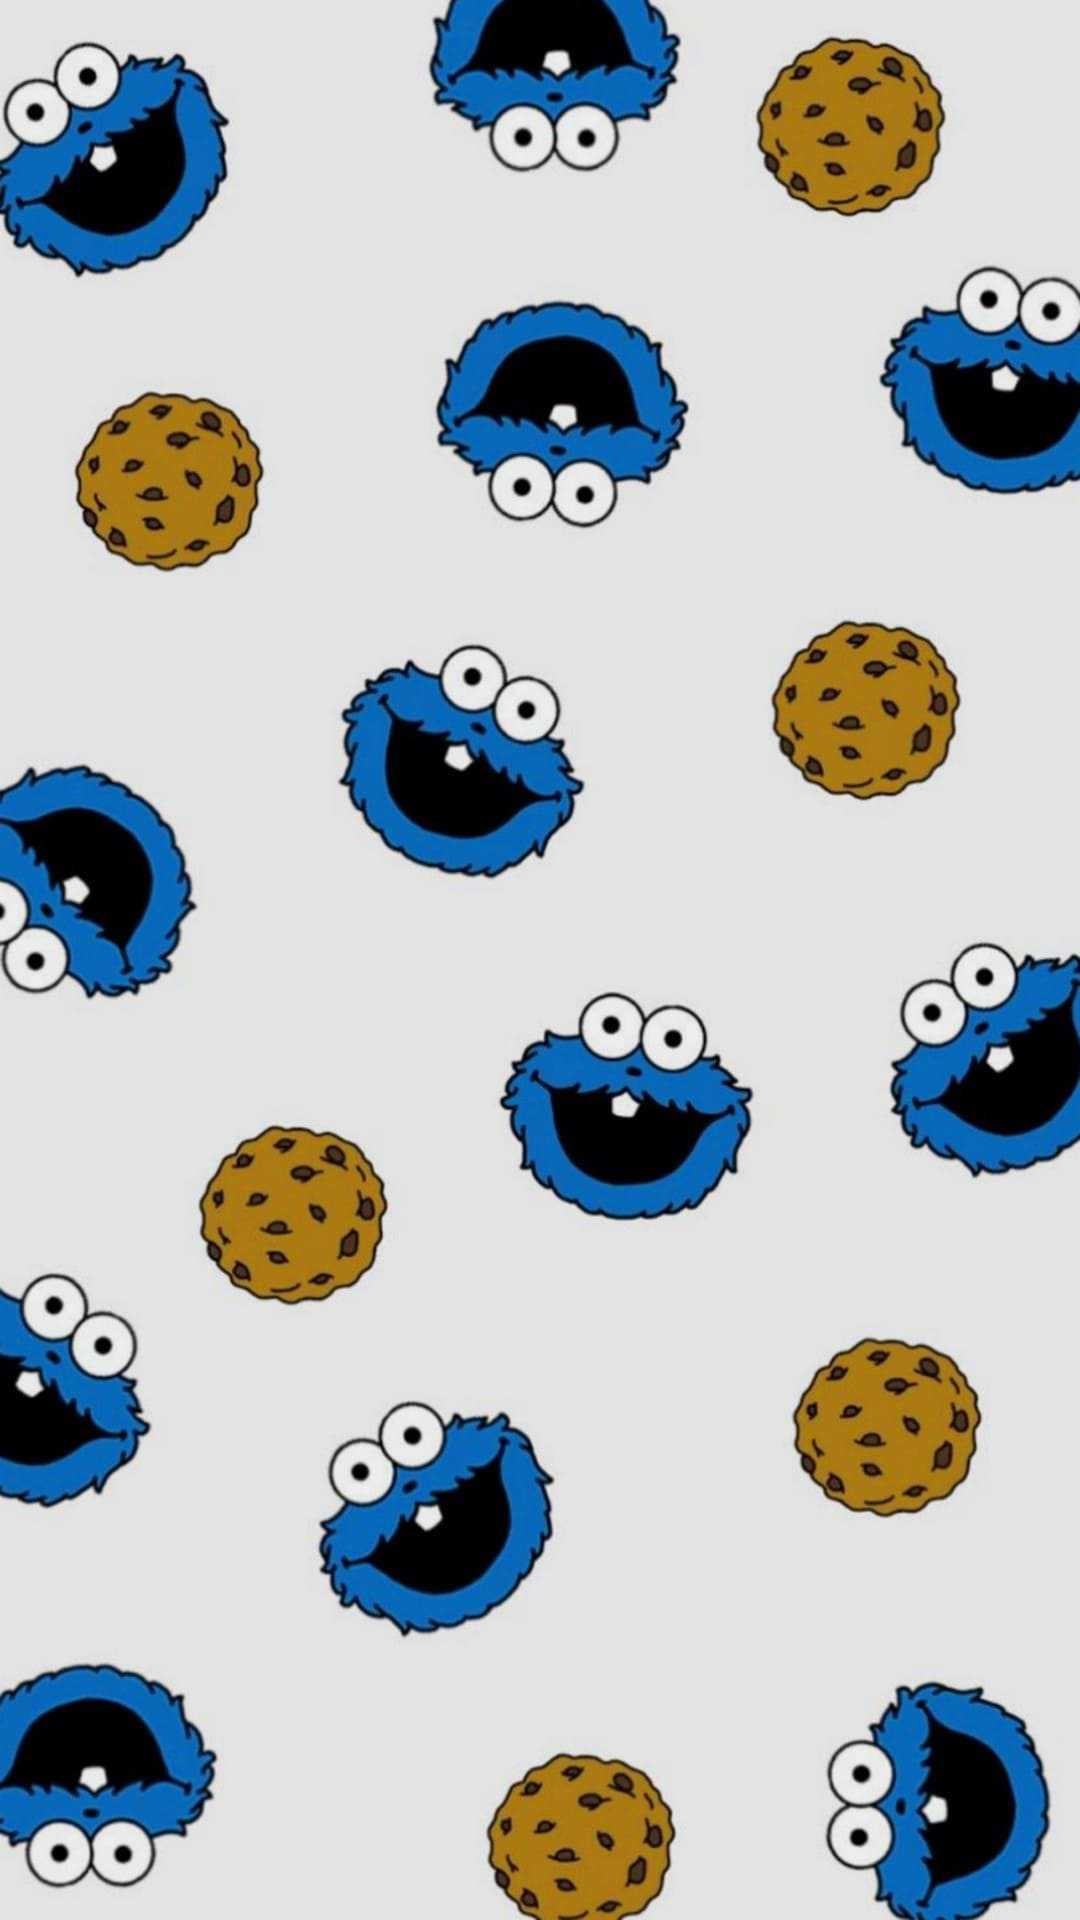 Cookie Monster Wallpaper - iXpap